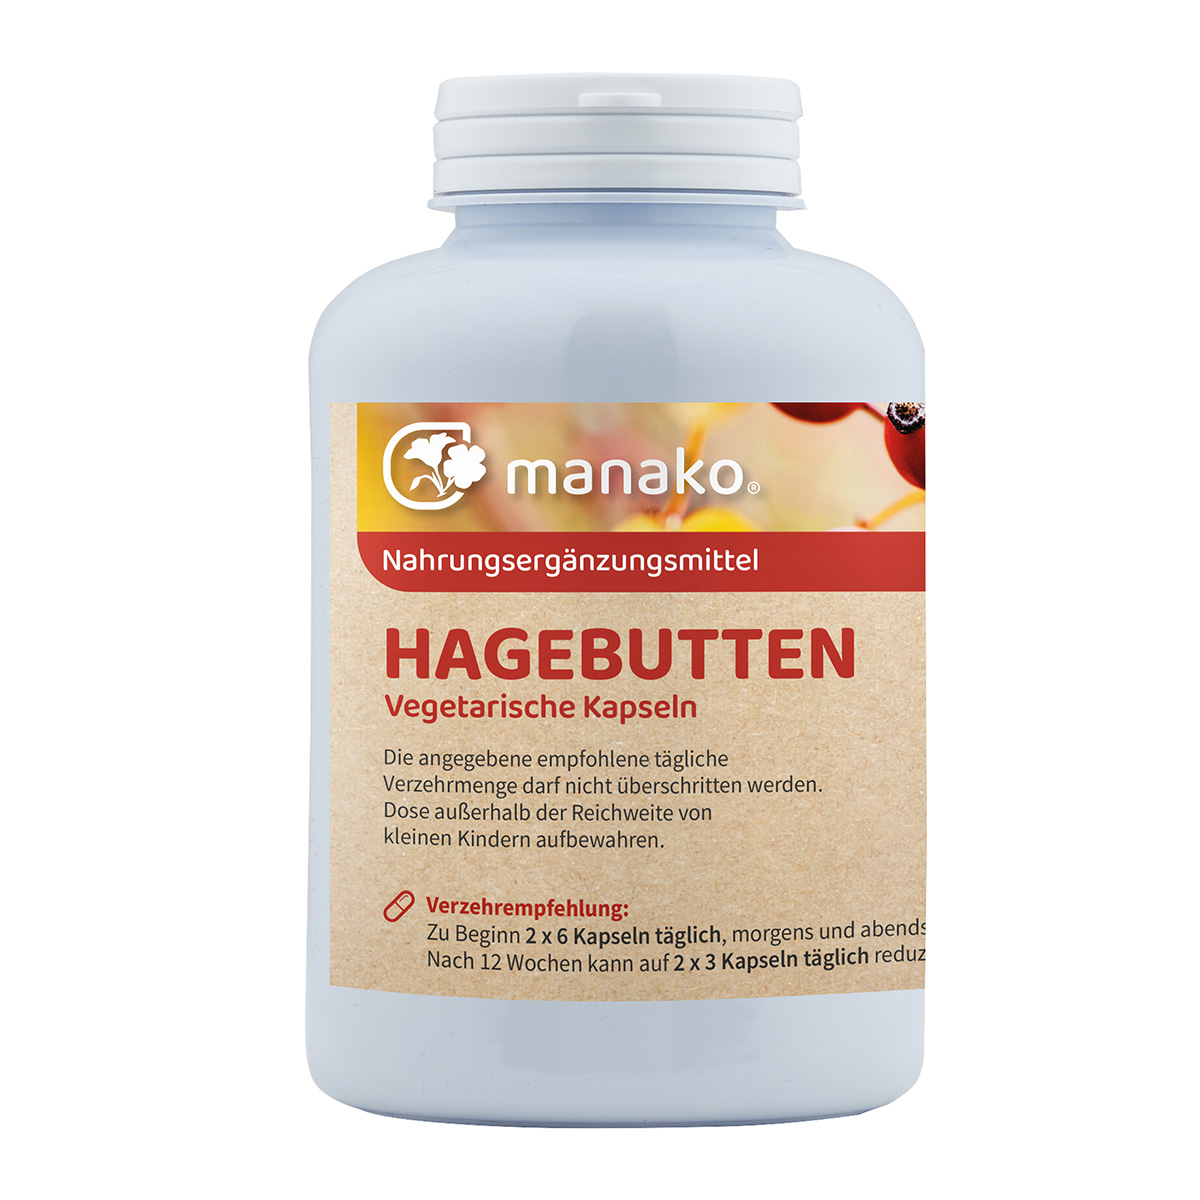 manako Hagebutten vegetarische Kapseln, 300 Stück a 500 mg, Dose a 180 g